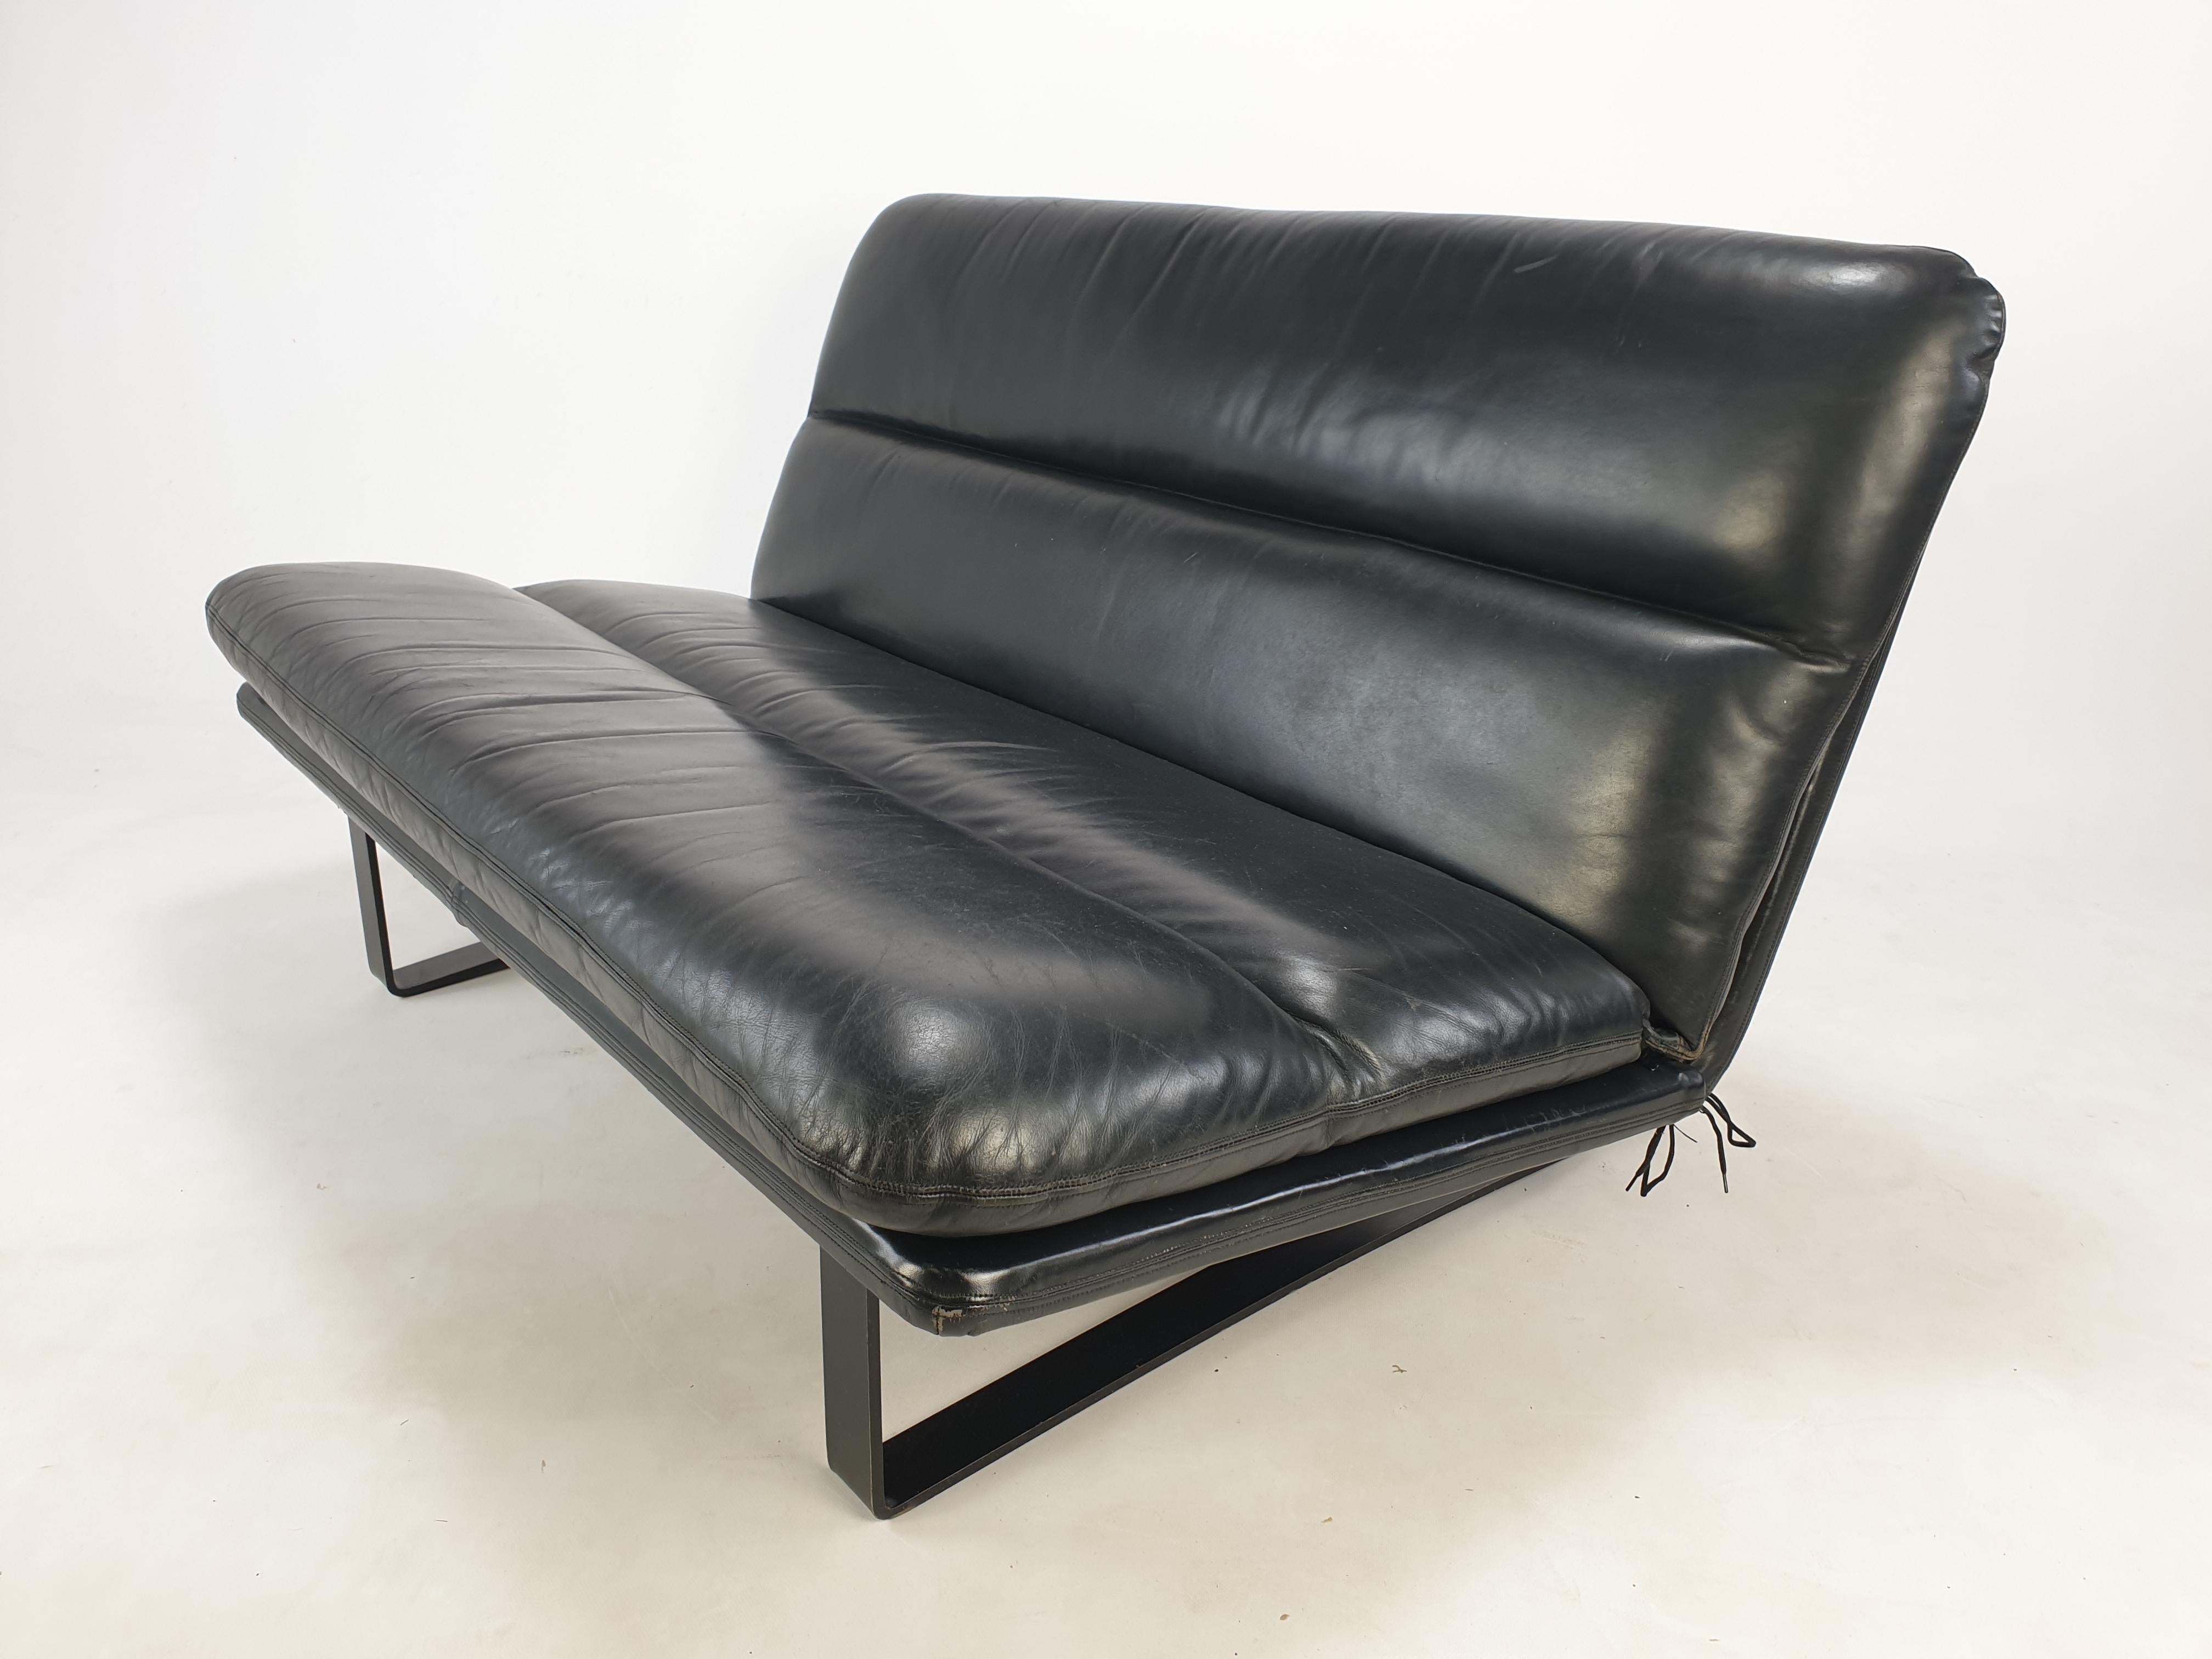 Canapé 2 places Comfortabele conçu par Kho Liang Ie.
Fabriqué par Artifort dans les années 60. En état original.
Très solide et de haute qualité, fabriqué avec les meilleurs matériaux.
Il a le superbe cuir noir d'origine, en bon état d'usage avec